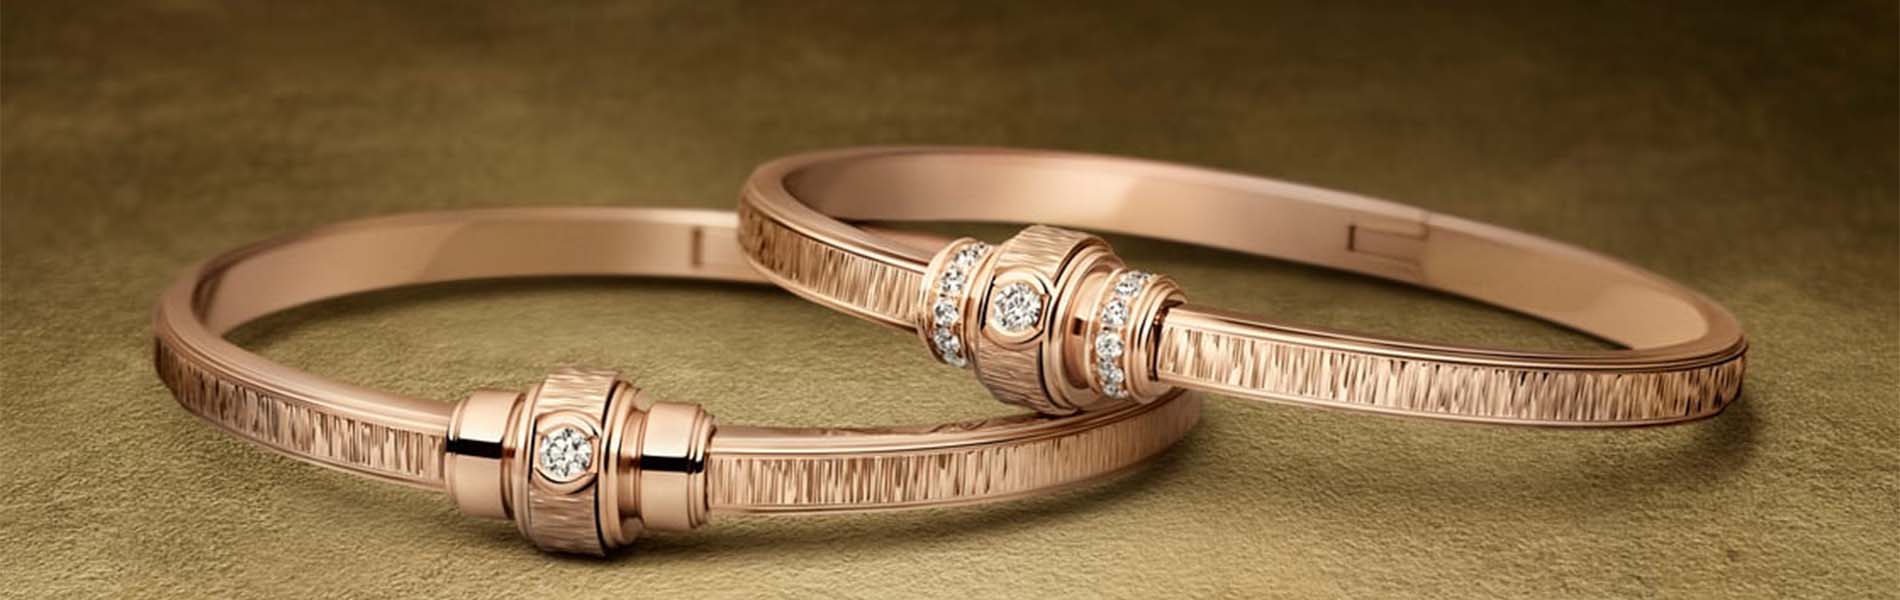 Piaget Fine Jewelry - Authorized Retailer - CH Premier Jewelers